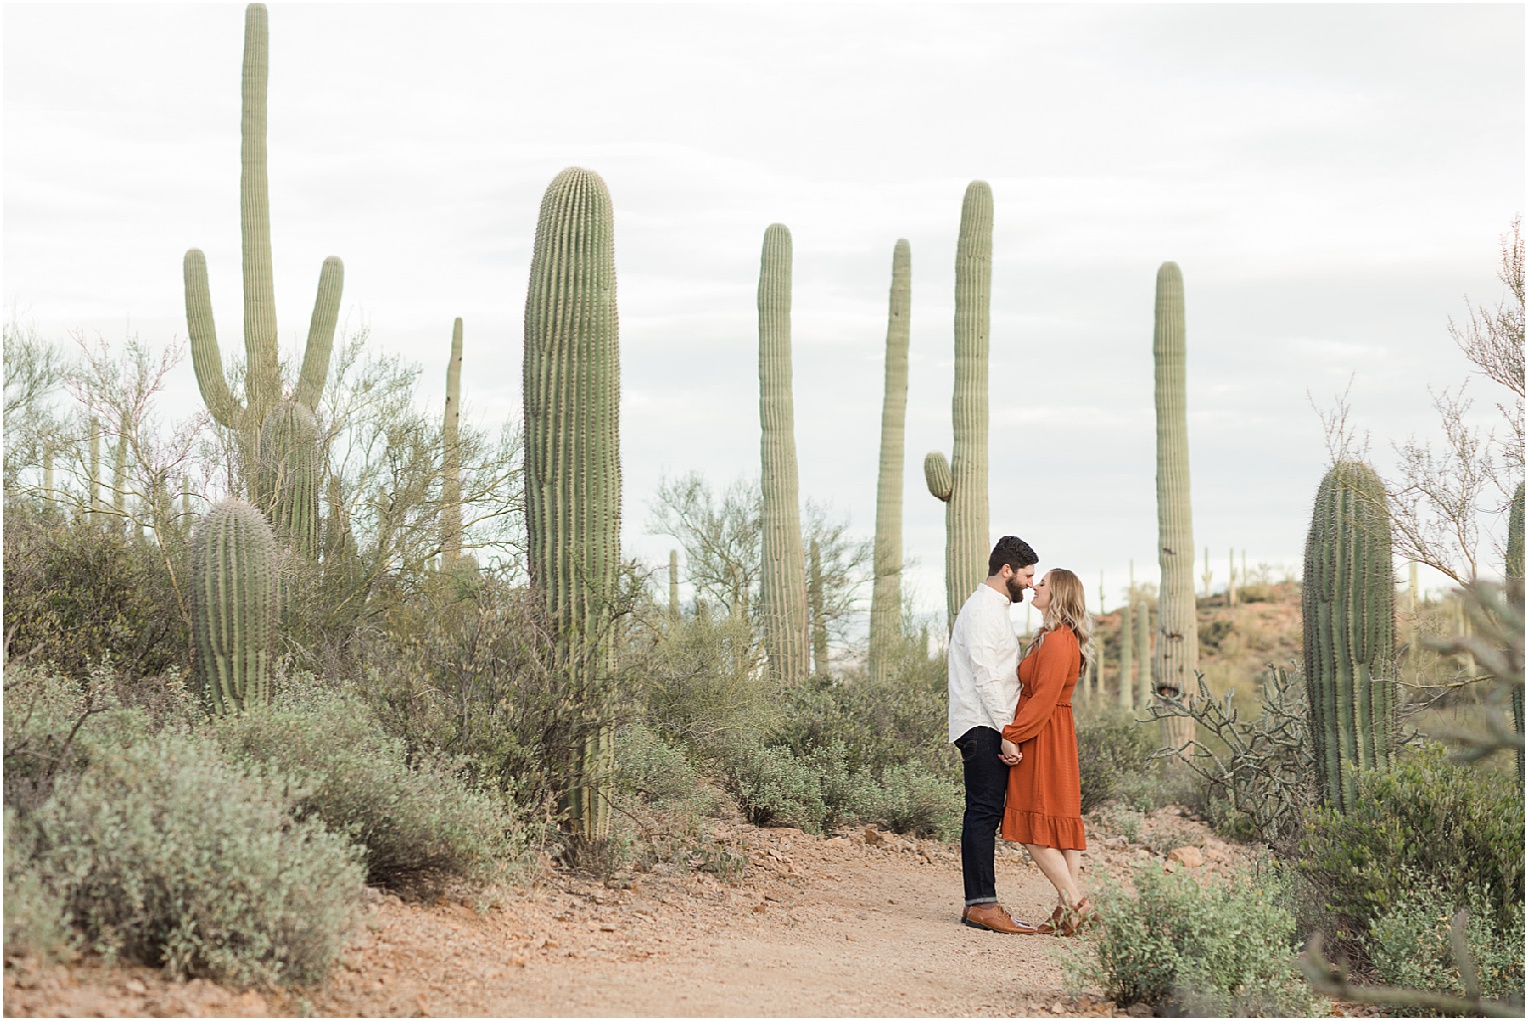 Engagement Photos in Tucson, Tucson AZ Katie + Michael Casual Desert Engagement Session